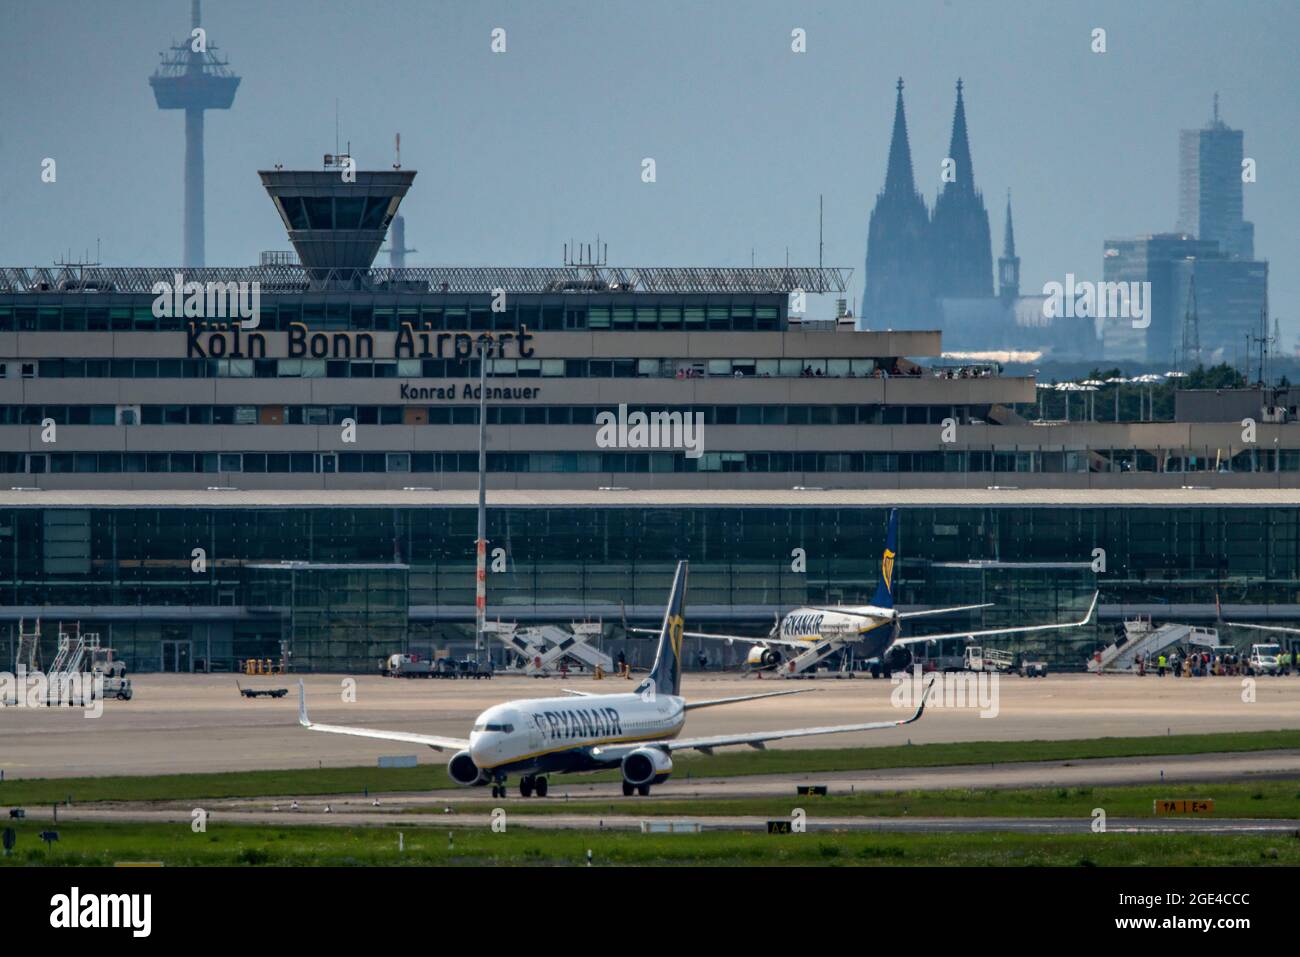 Aéroport de Cologne-Bonn, CGN, Ryanair Boeing 737 sur le taxi, Skyline, cathédrale de Cologne, Cologne, NRW, Allemagne Banque D'Images